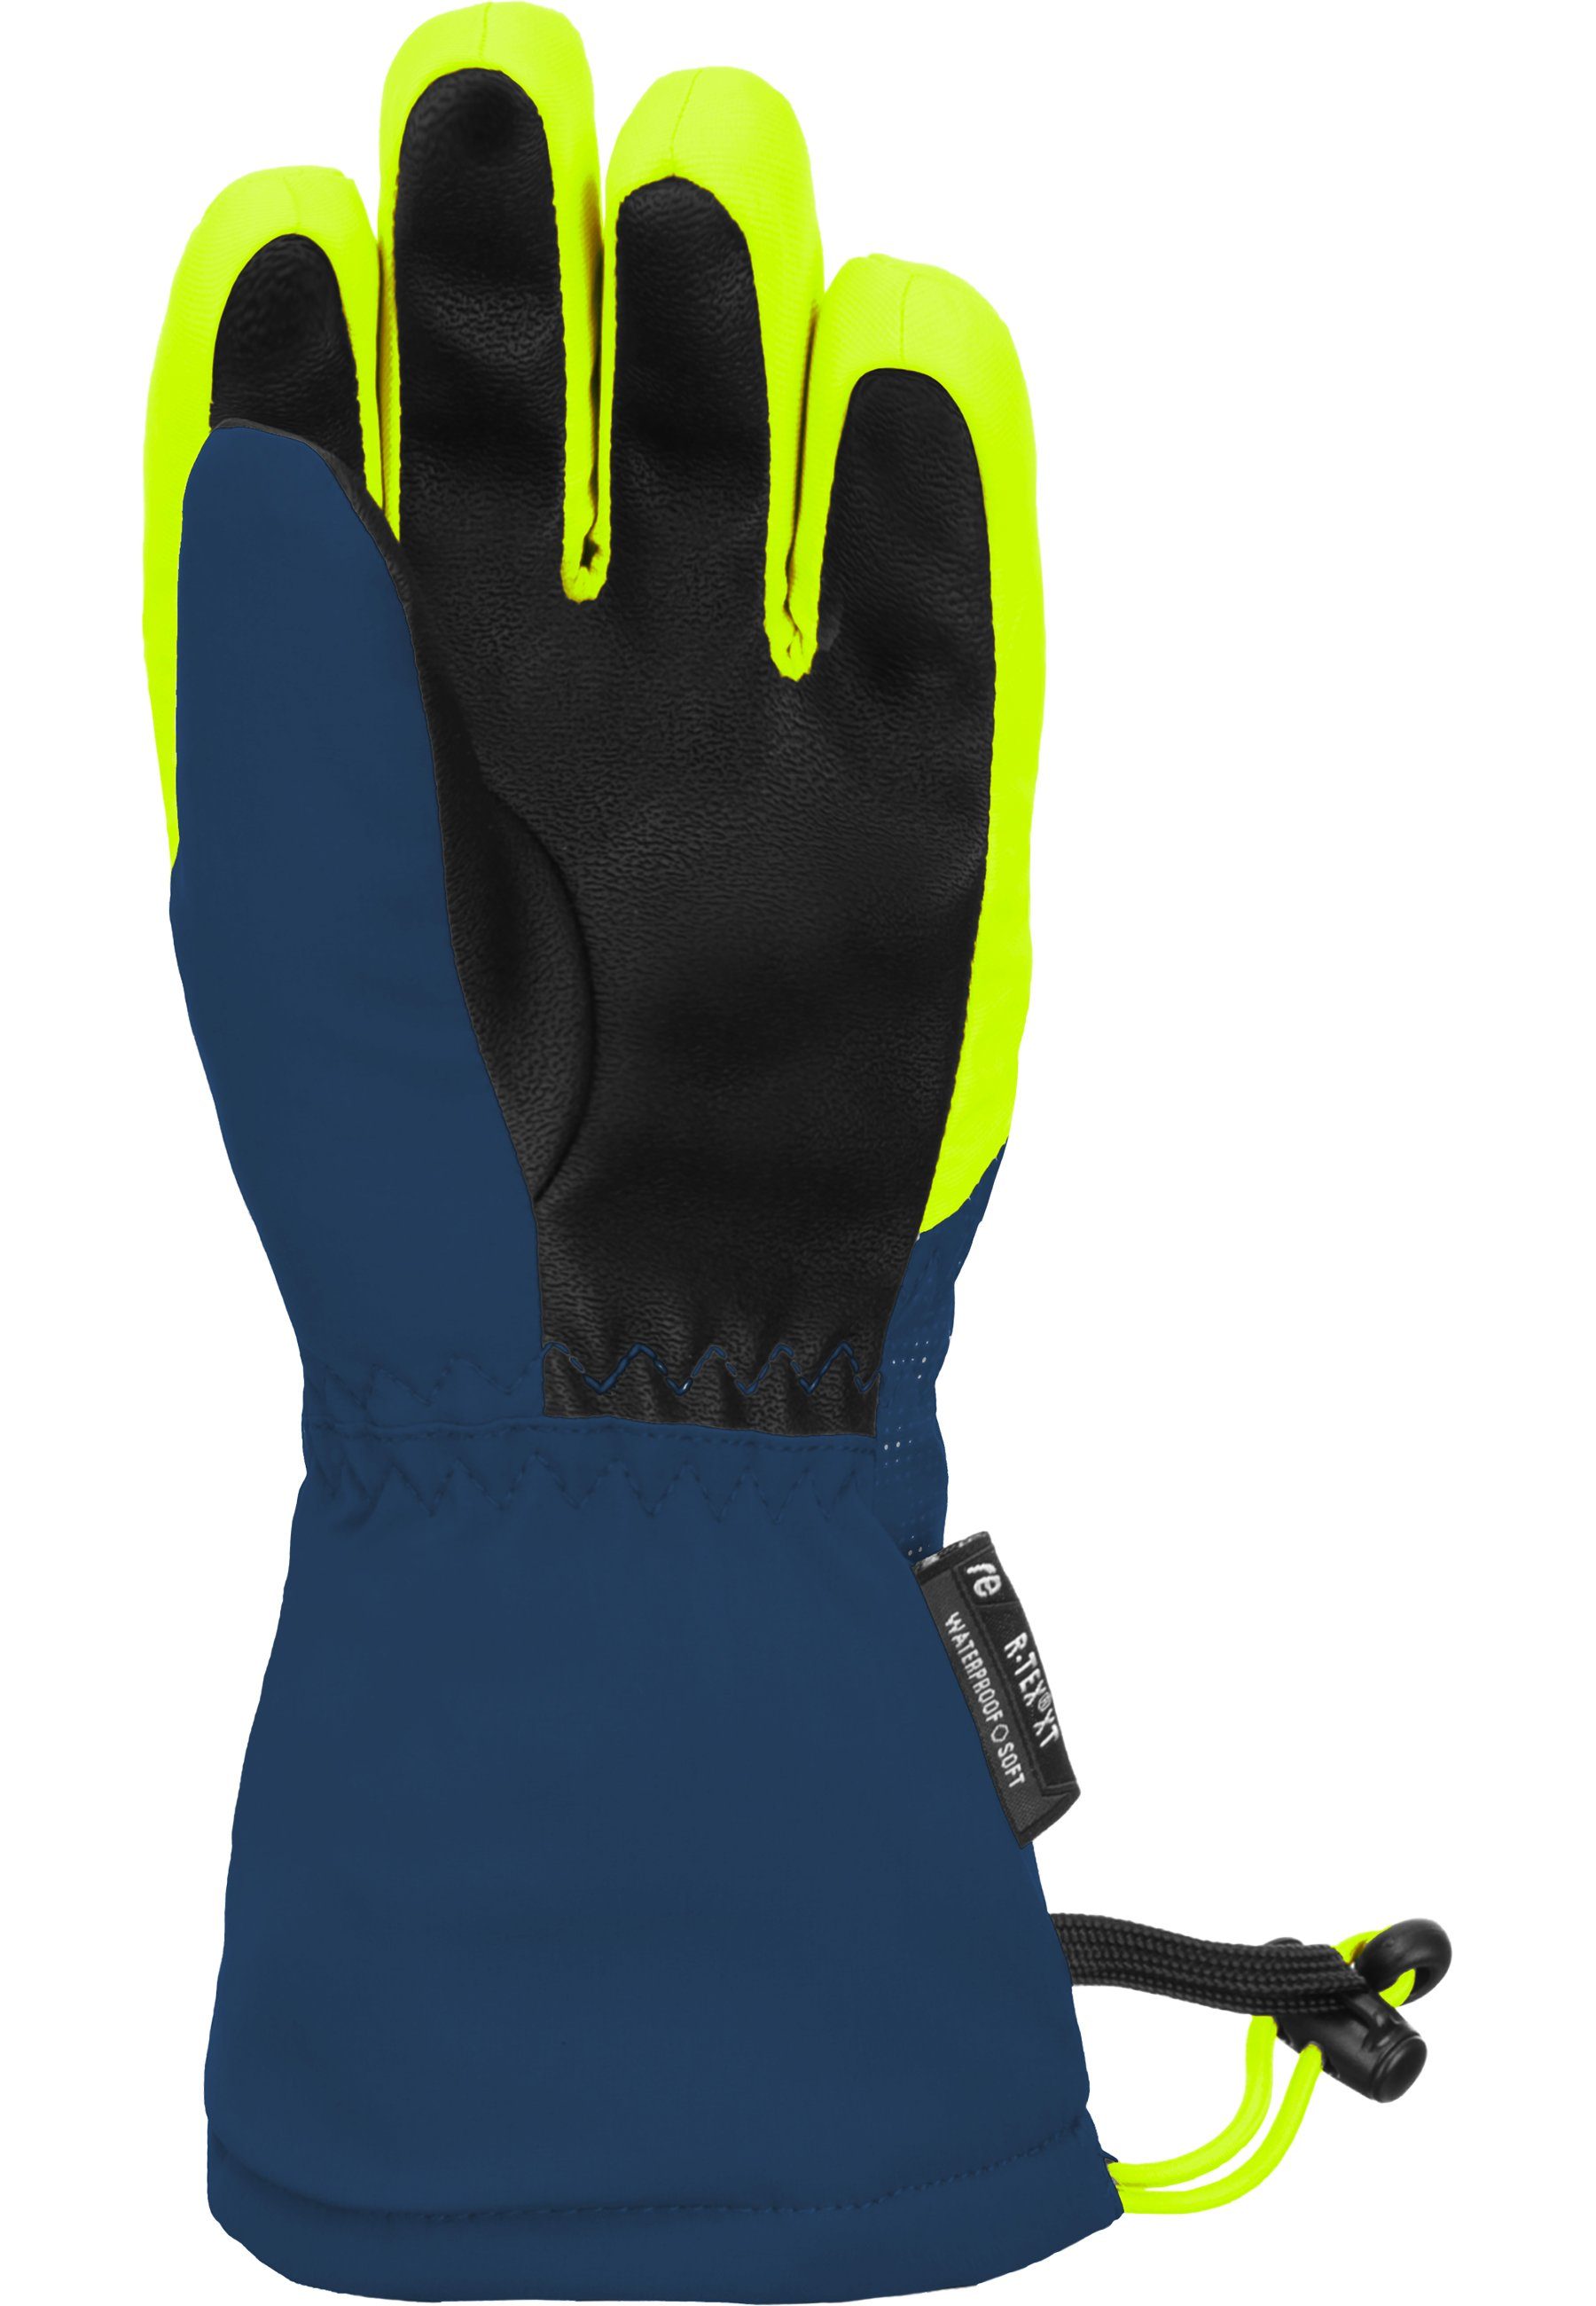 R-TEX Fütterung Reusch Skihandschuhe blau-gelb Maxi XT warmer mit